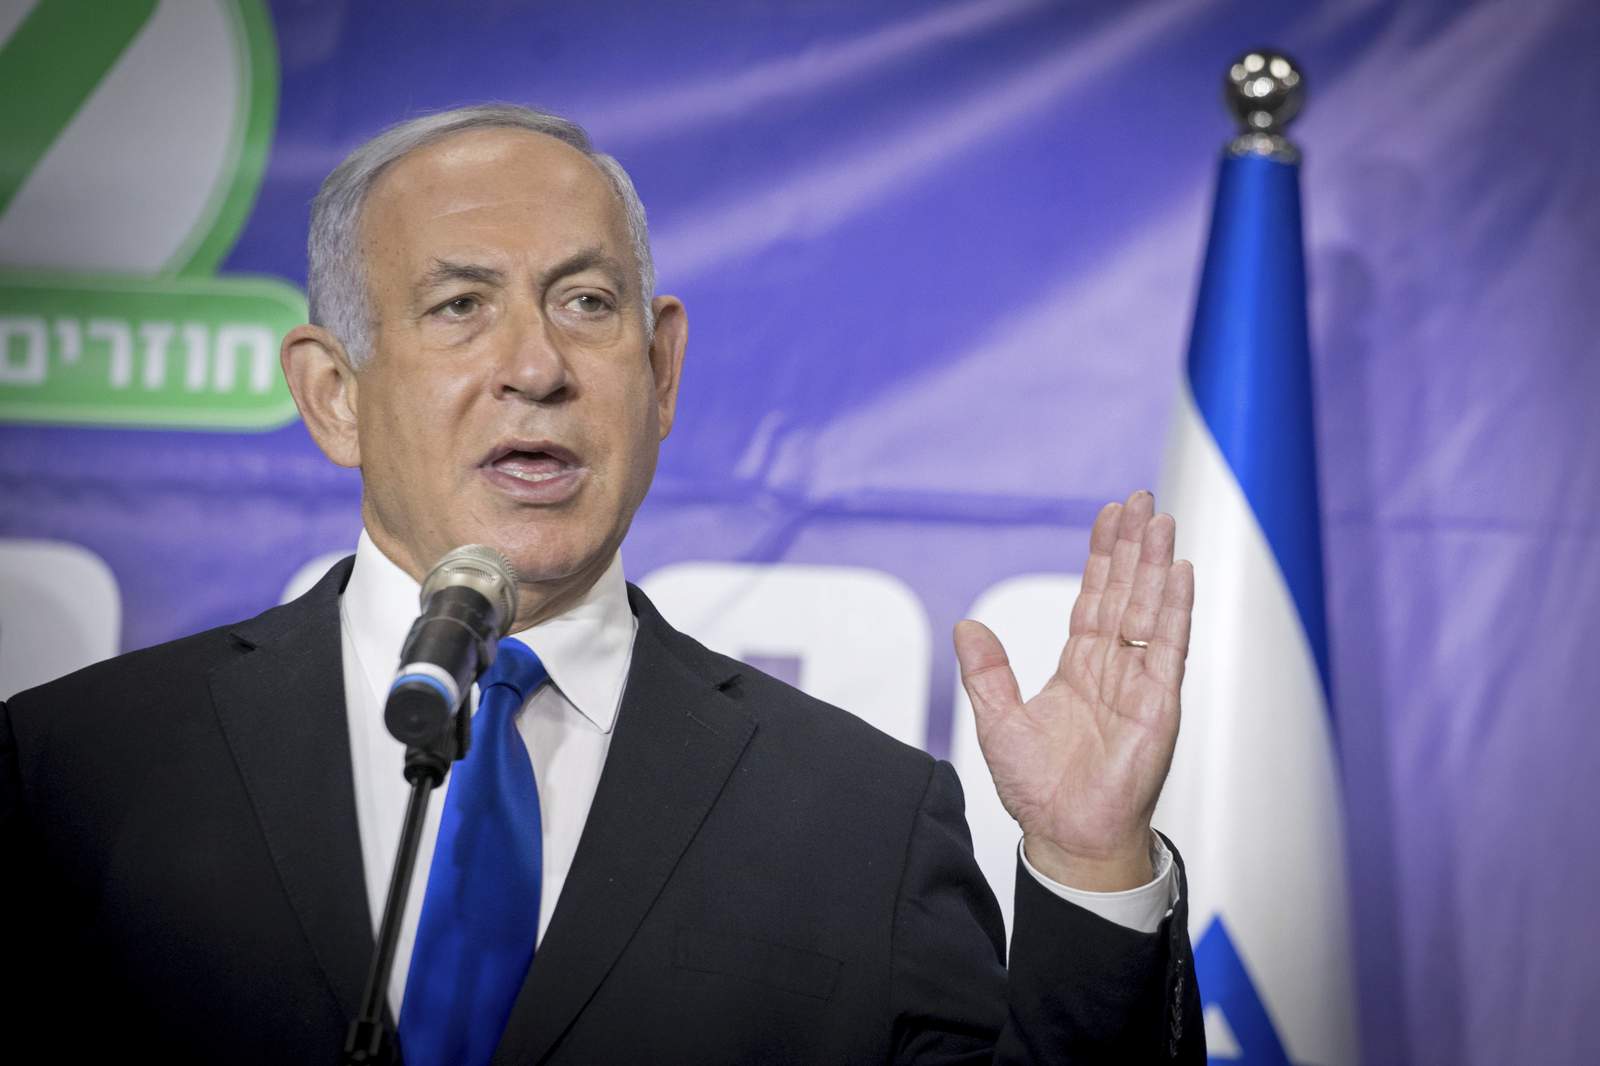 Israel's Netanyahu cancels UAE trip in pre-election setback